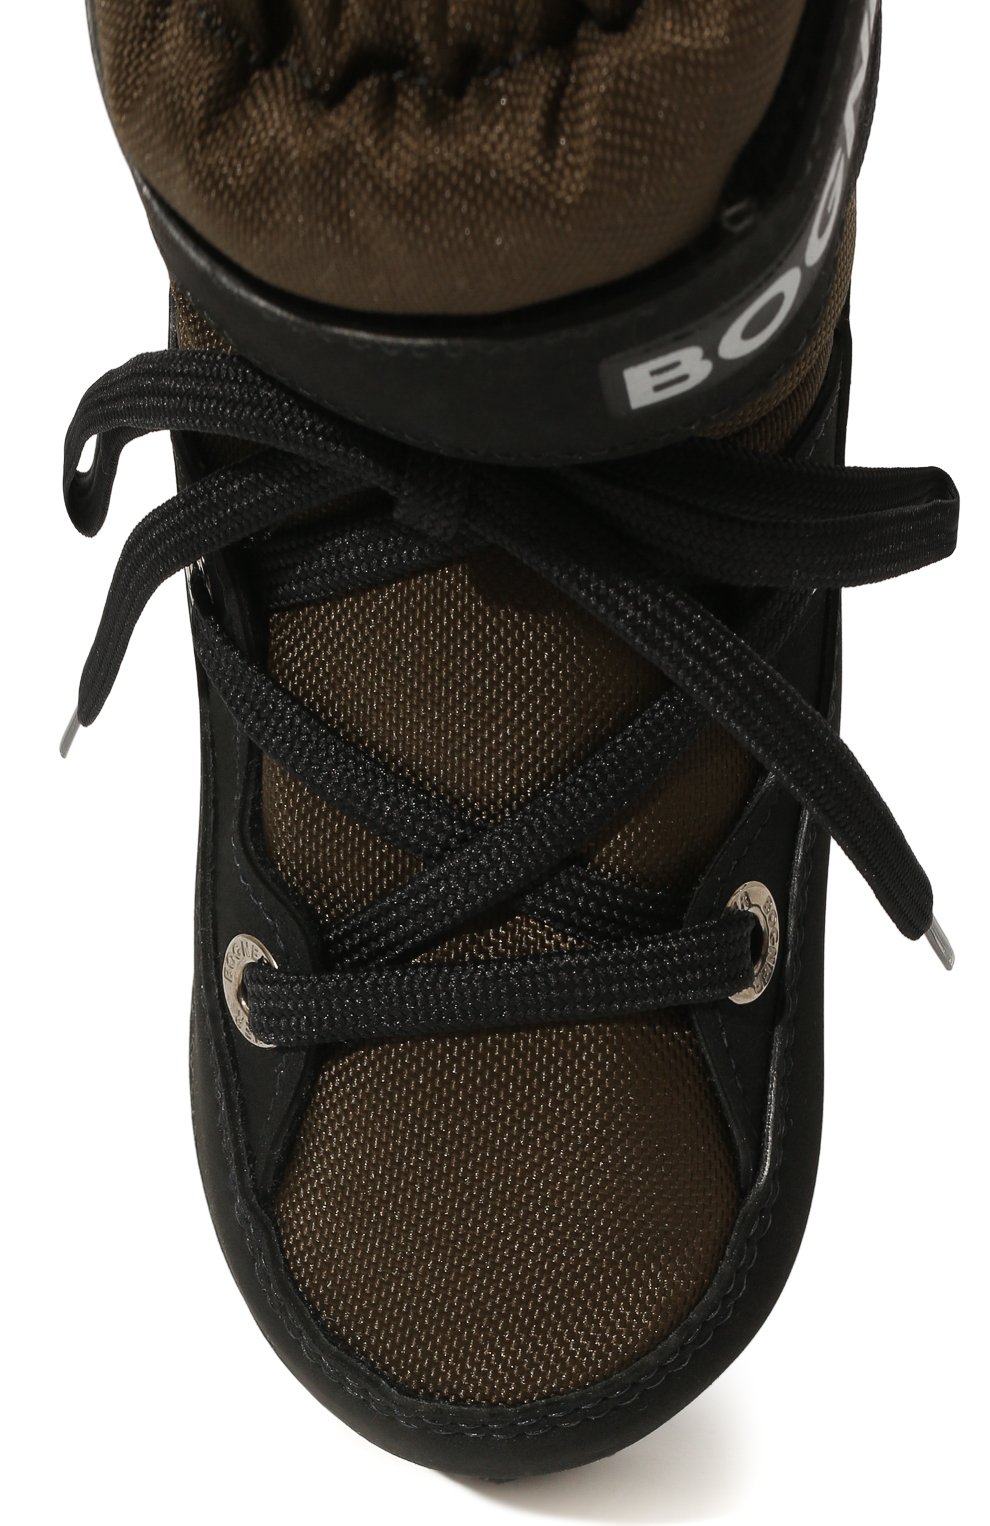 Утепленные ботинки BOGNER детские хаки цвета — купить в интернет-магазинеЦУМ, арт. 42247962/SESTRIERE JR.3 B